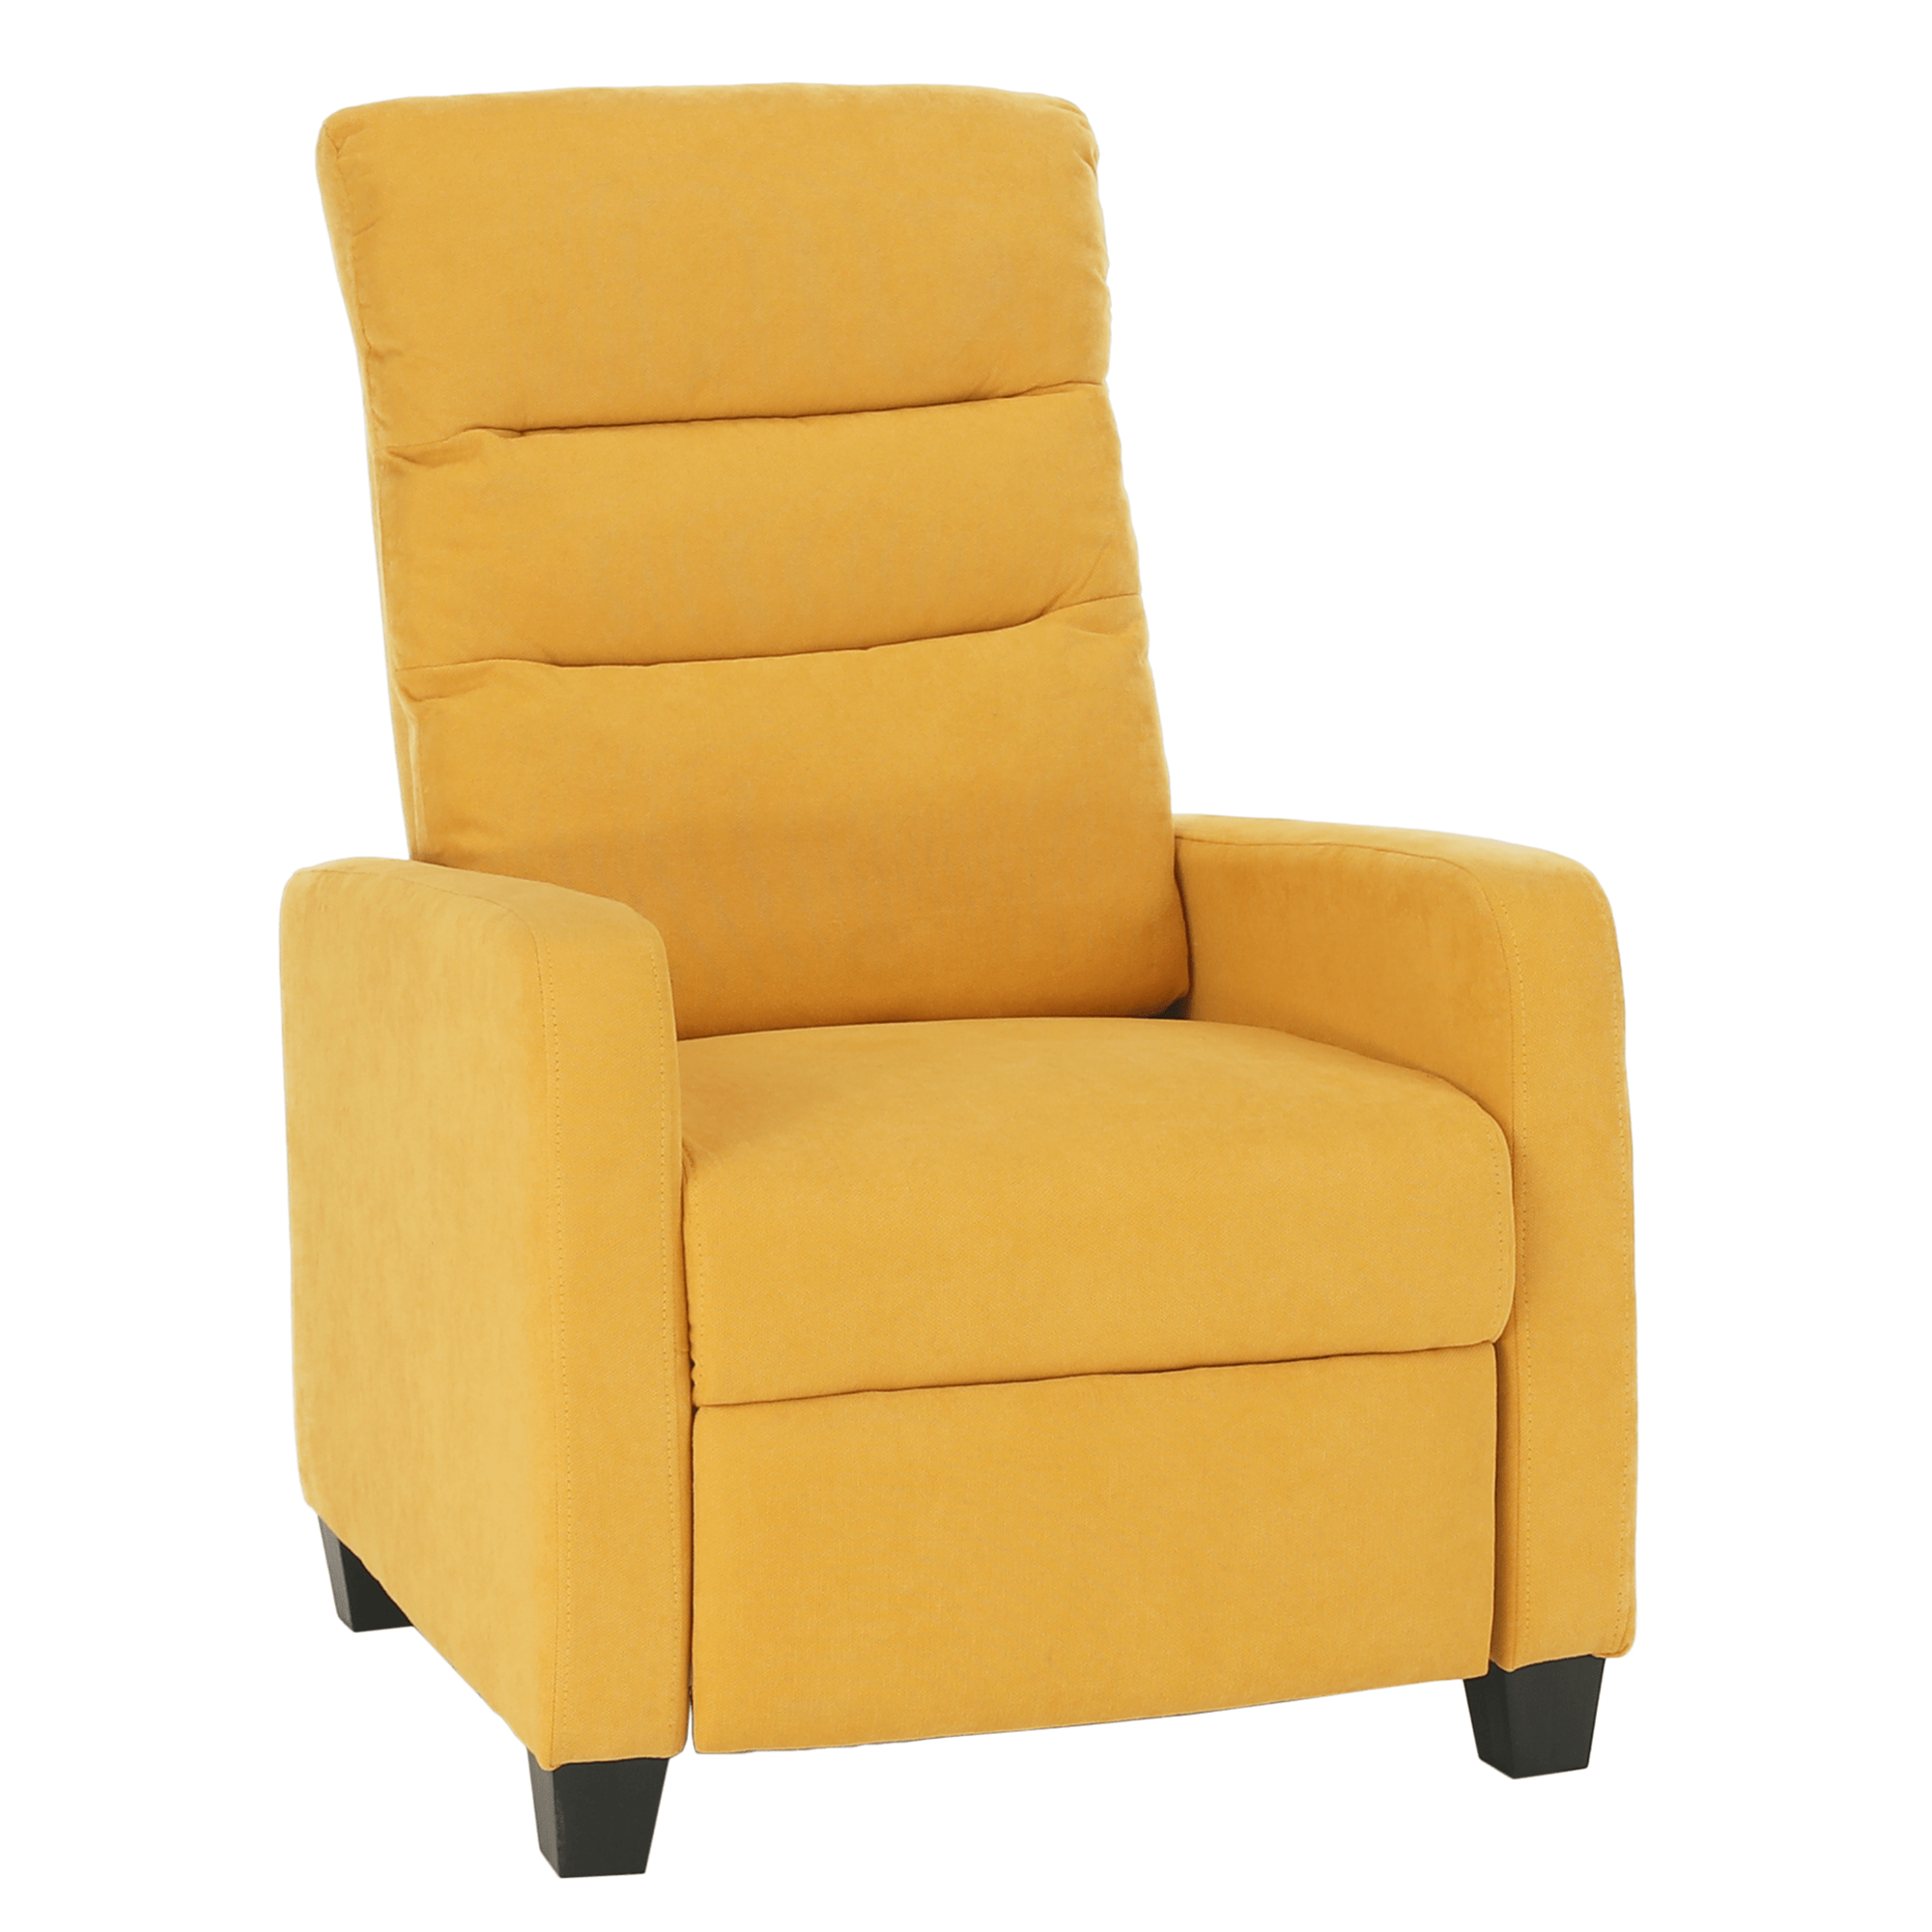 Relaxáló fotel, sárga, TURNER (TK)